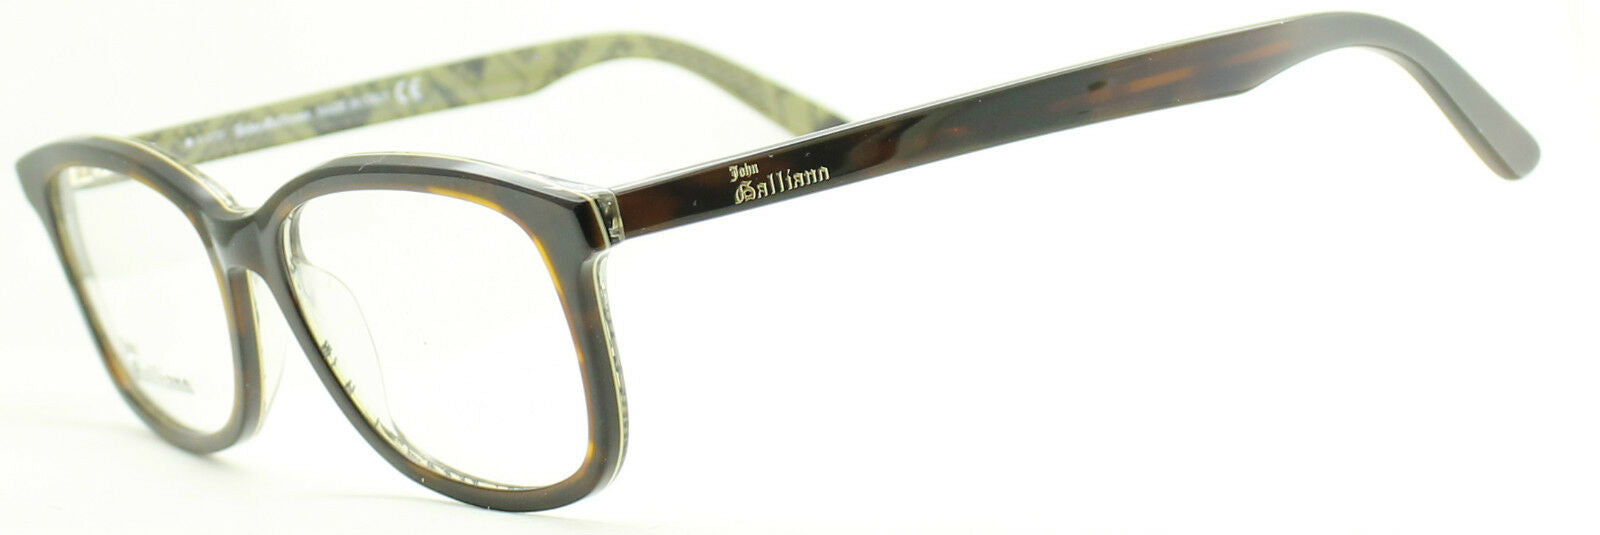 JOHN GALLIANO JG5011 col.056 Eyewear RX Optical FRAMES NEW Eyeglasses - BNIB